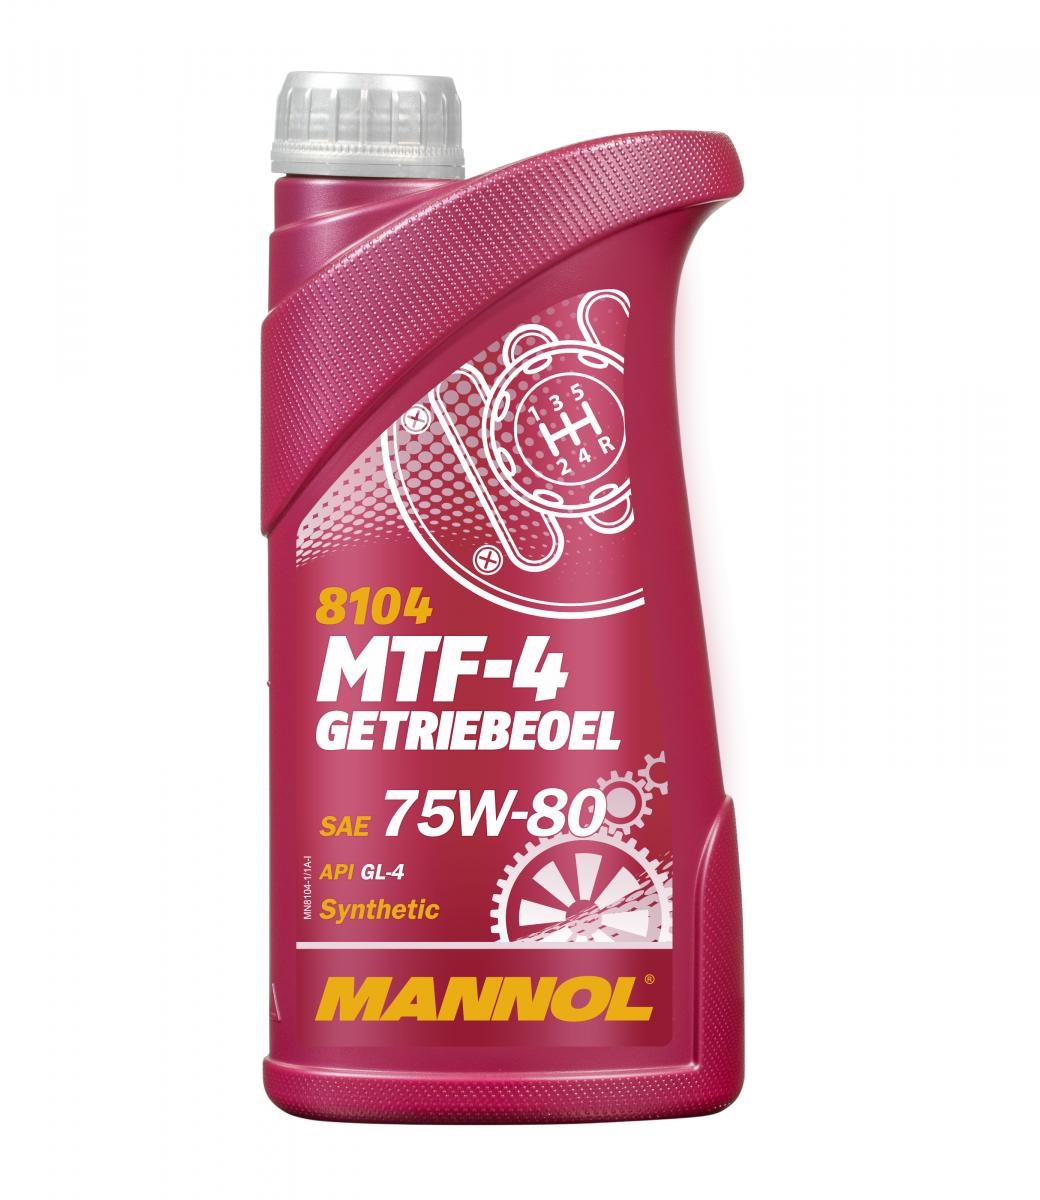 MANNOL MTF-4, GL-4 MN8104-1 CCM Getriebeöl Motorrad zum günstigen Preis